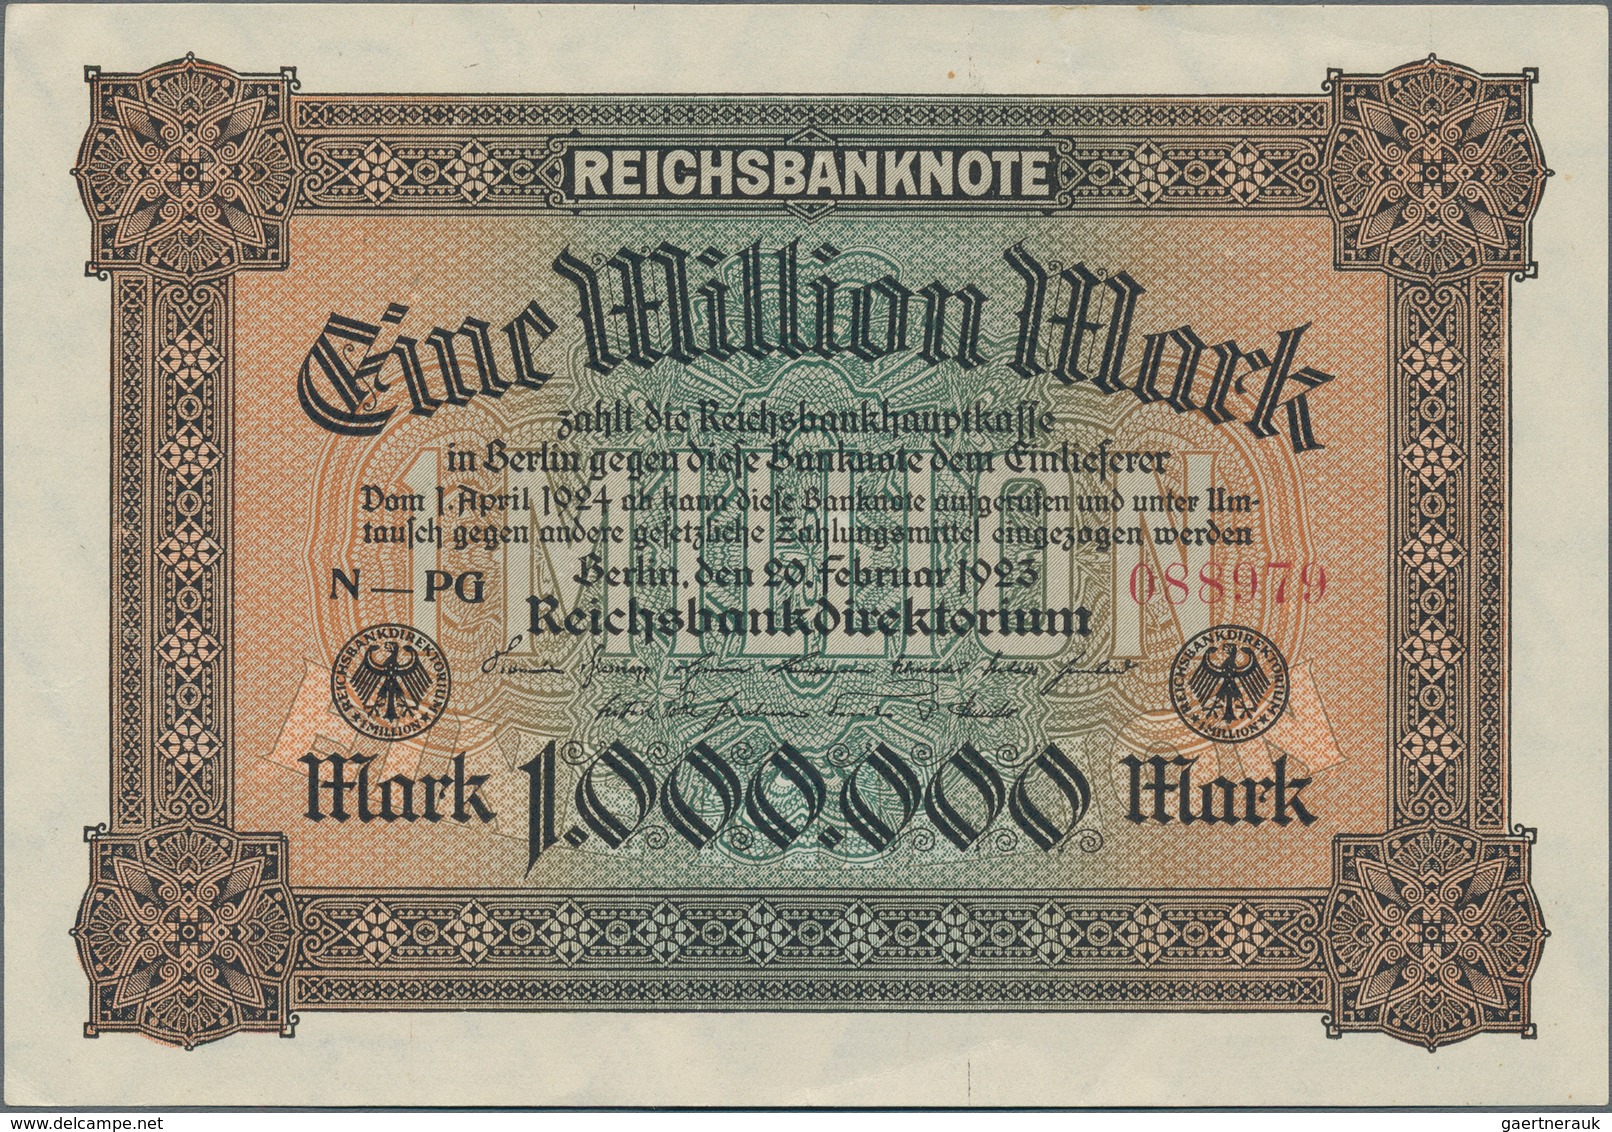 Deutschland - Deutsches Reich bis 1945: Schachtel mit ca. 500 Banknoten Kaiserreich bis frühe Bundes